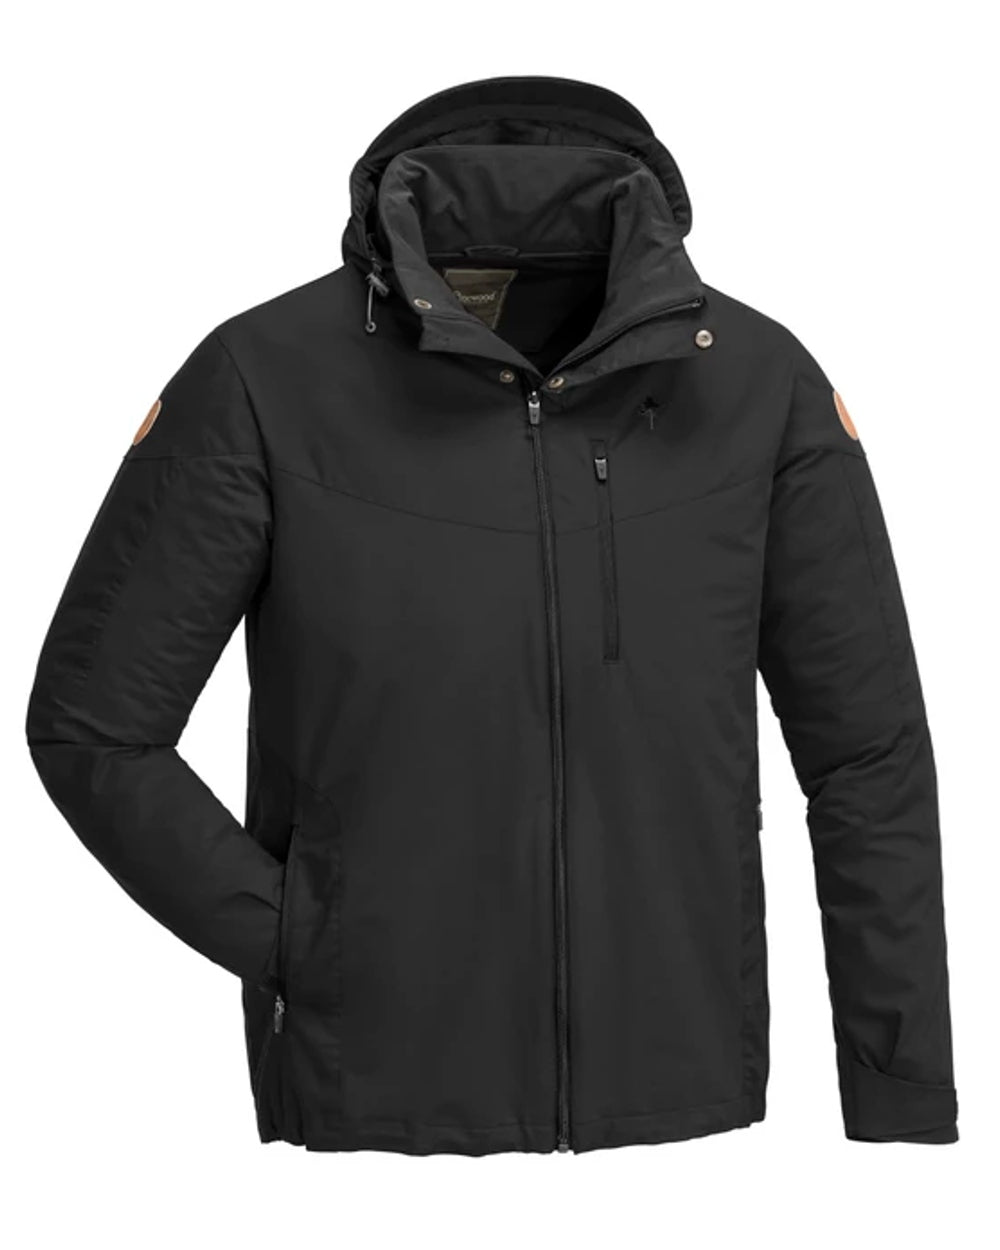 Pinewood Mens Finnveden Hybrid Jacket in Black 